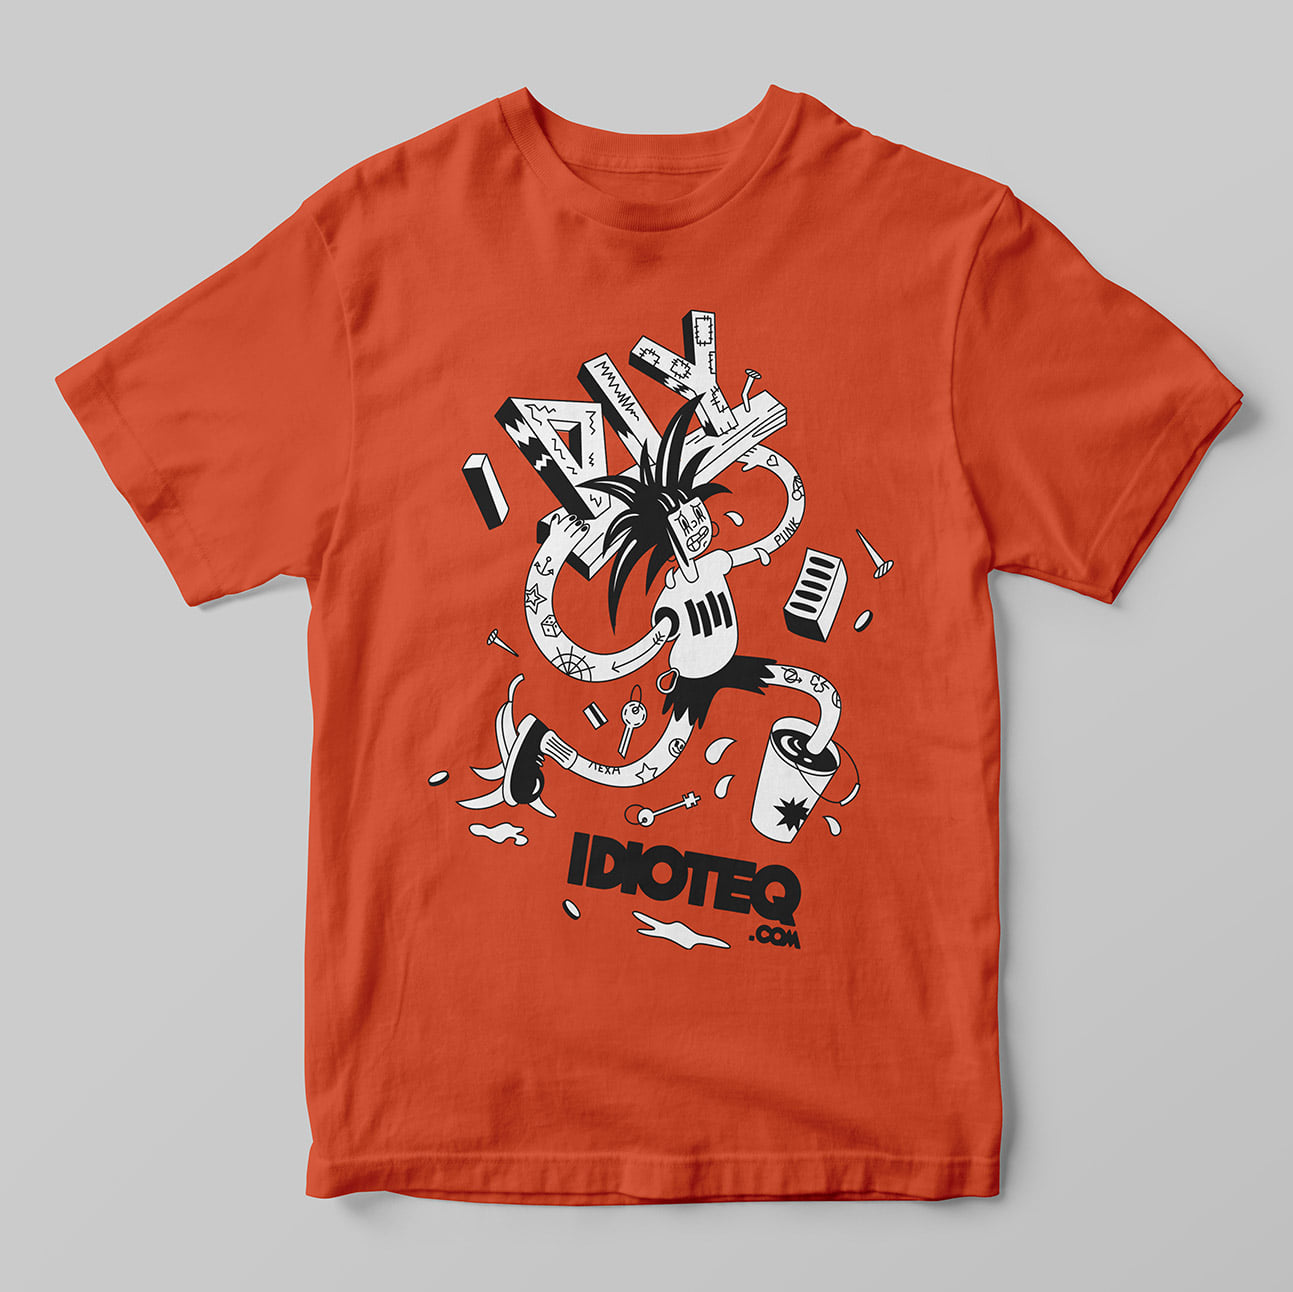 IDIOTEQ.com t shirts 3 min